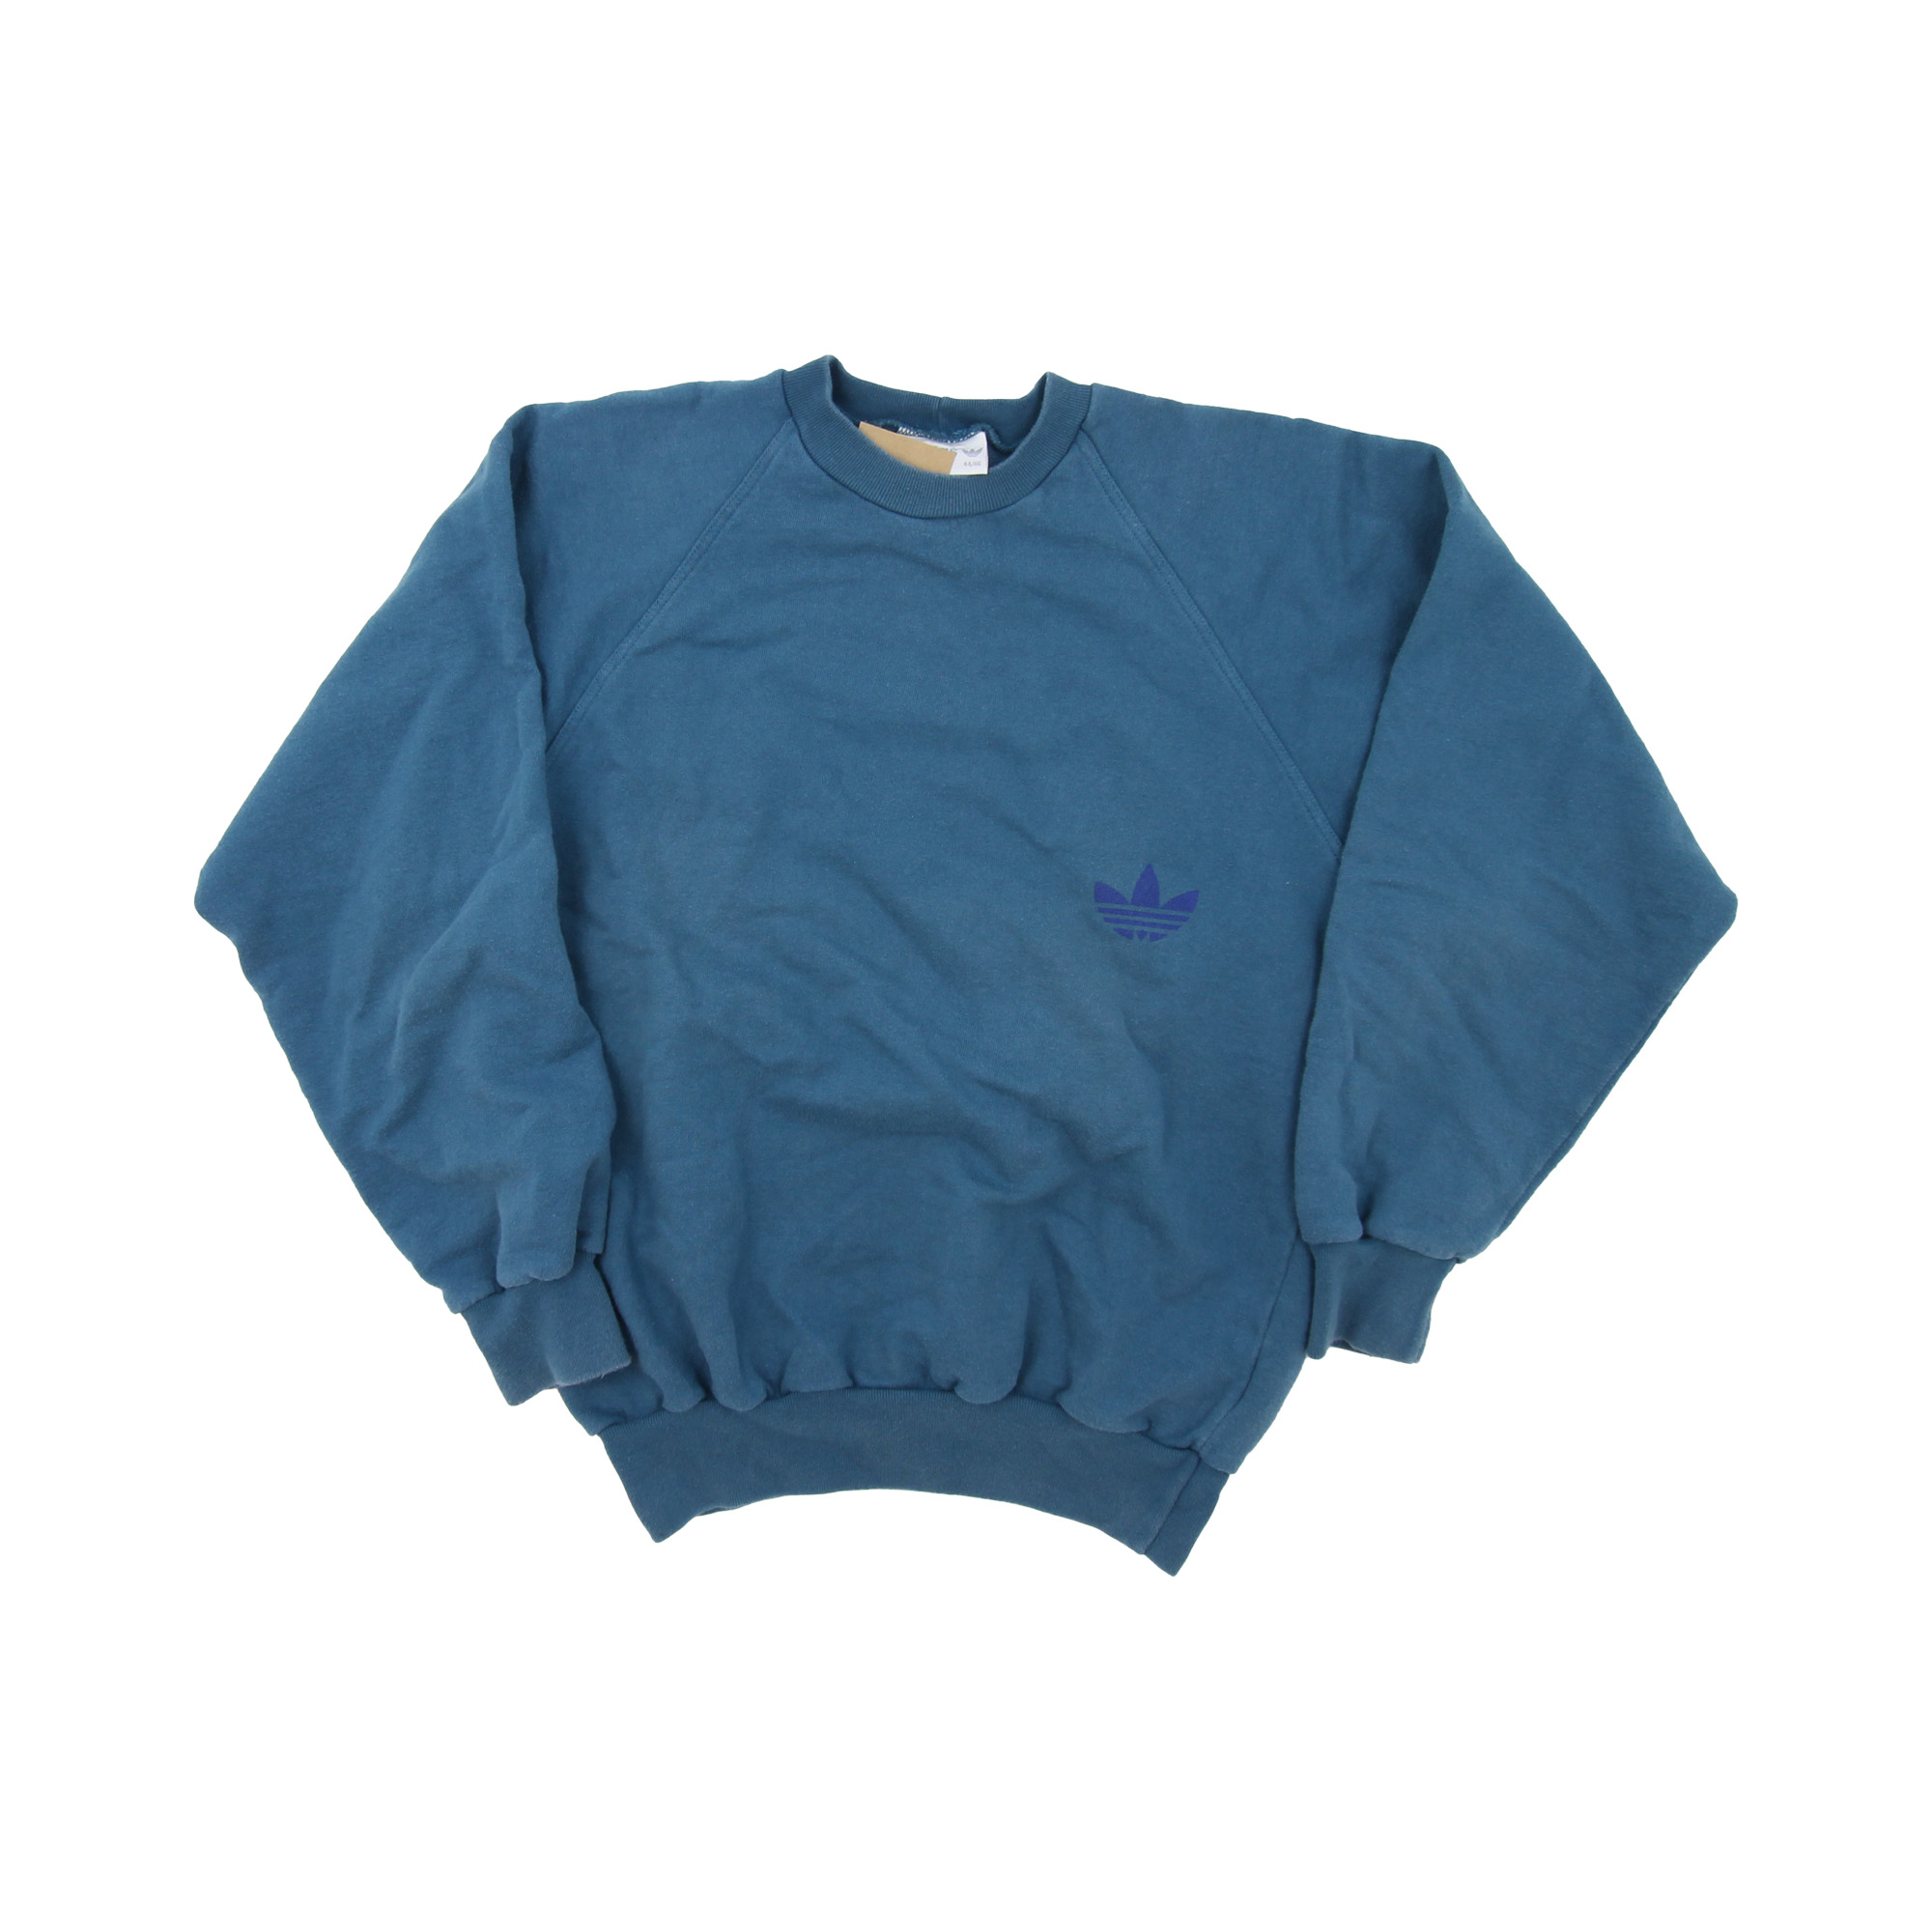 Adidas Vintage Sweatshirt -  S